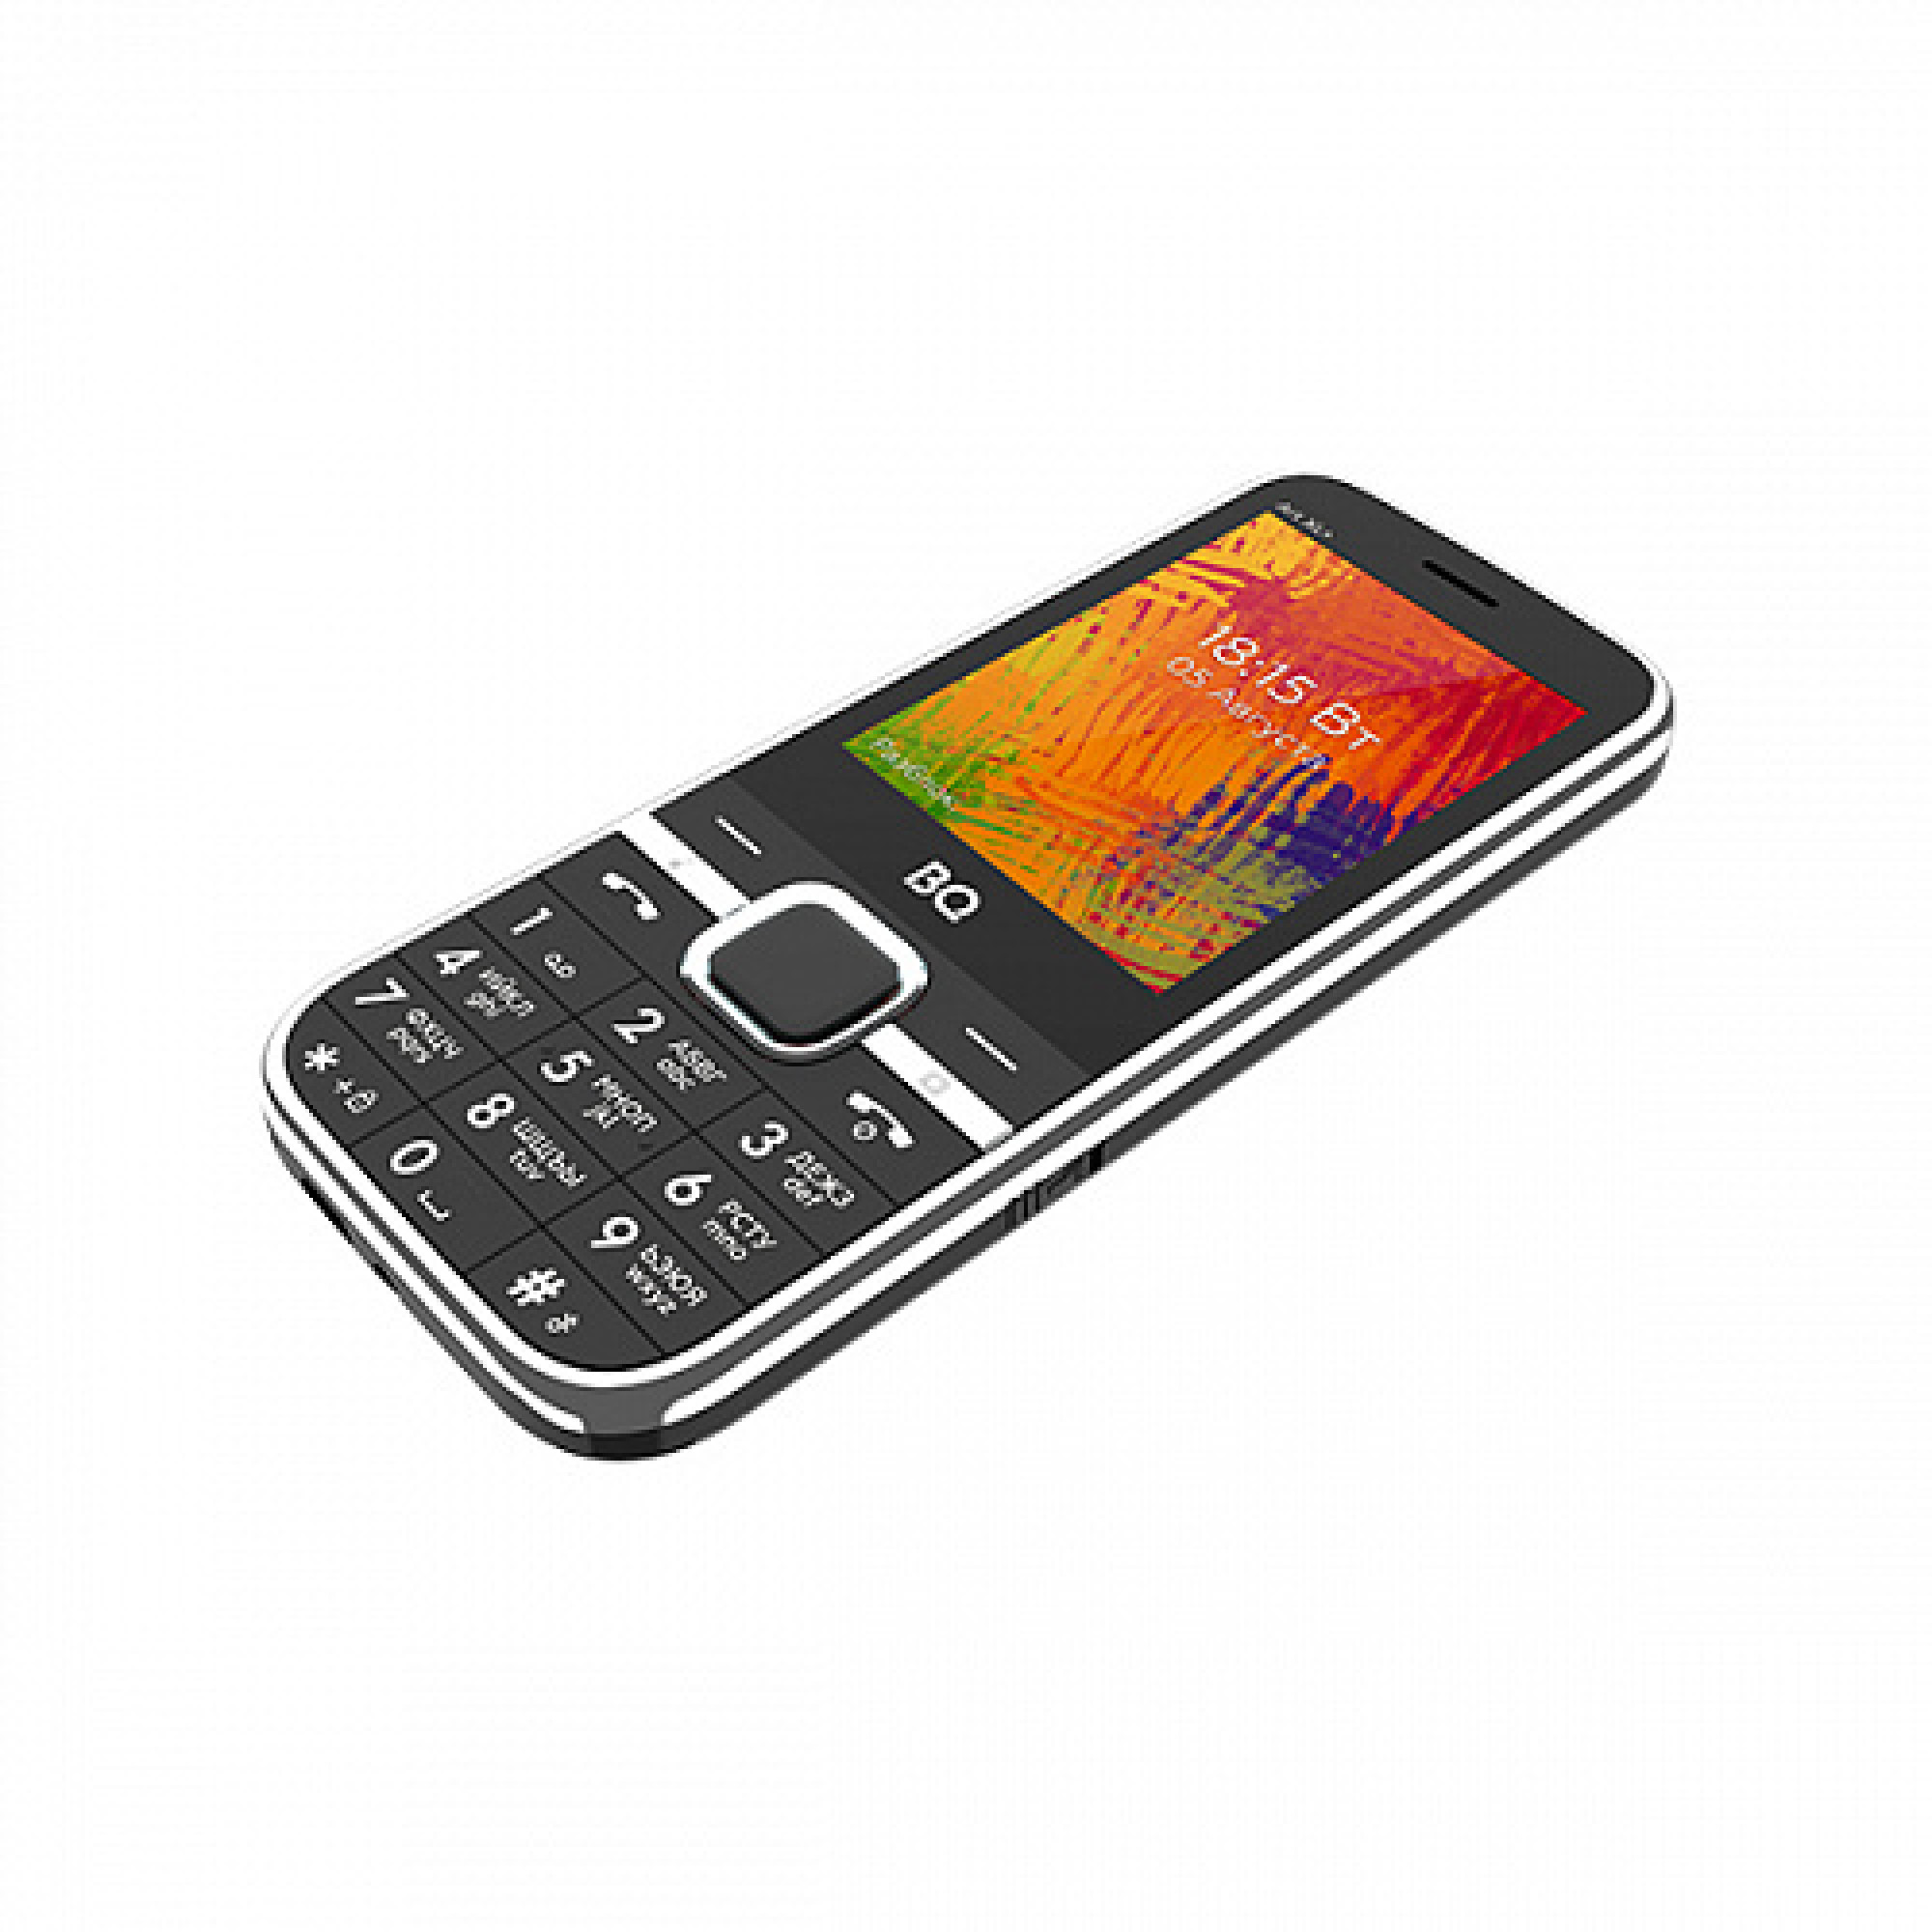 Мобильный телефон BQ BQ-2838 Art XL+ (черный)
